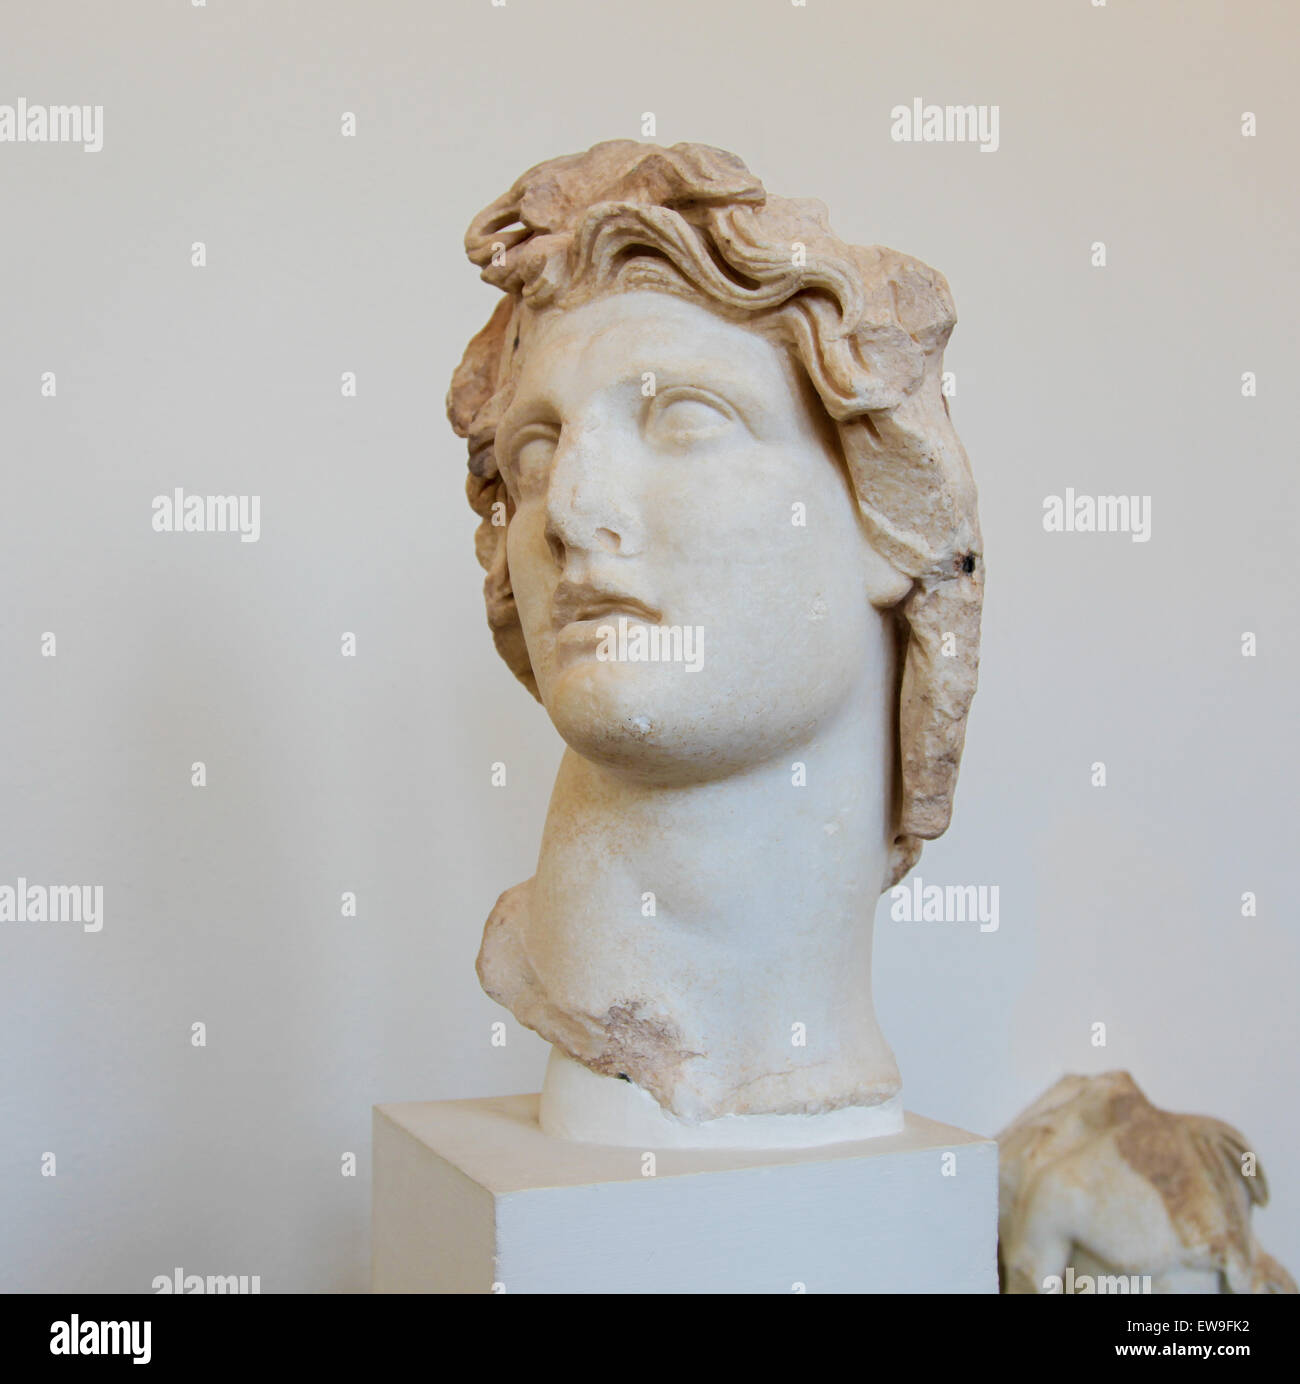 Statua di Apollo, dio greco del sole, al Museo Archeologico di Rodi, Grecia Foto Stock